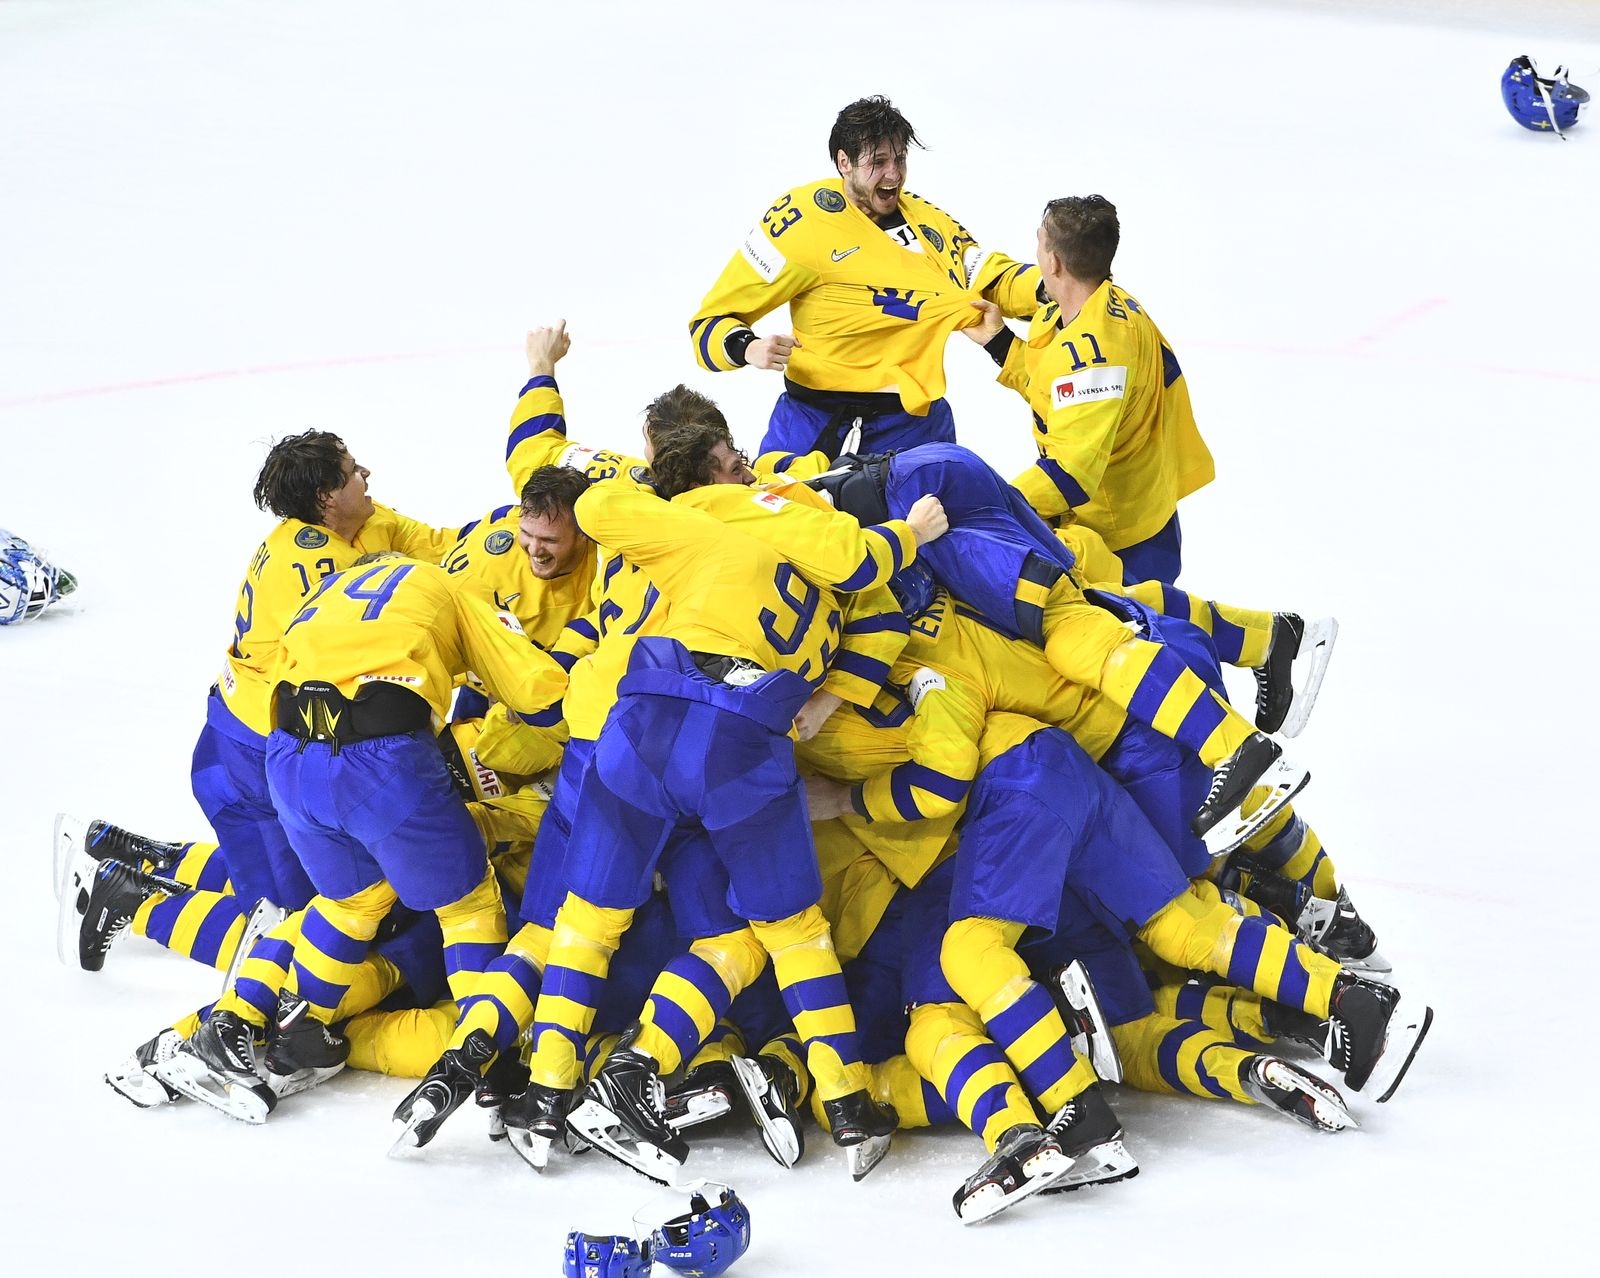 KÖPENHAMN 20180520
Sverige jublar efter segern i finalen i ishockey-VM mellan Sverige och Schweiz i Royal Arena.
Tre Kronor vann med 3ó2 efter straffläggning.
Foto: Claudio Bresciani / TT / Kod 10090 ***Bilden ingår i SPORTPAKETET. För övriga BETALBILD***